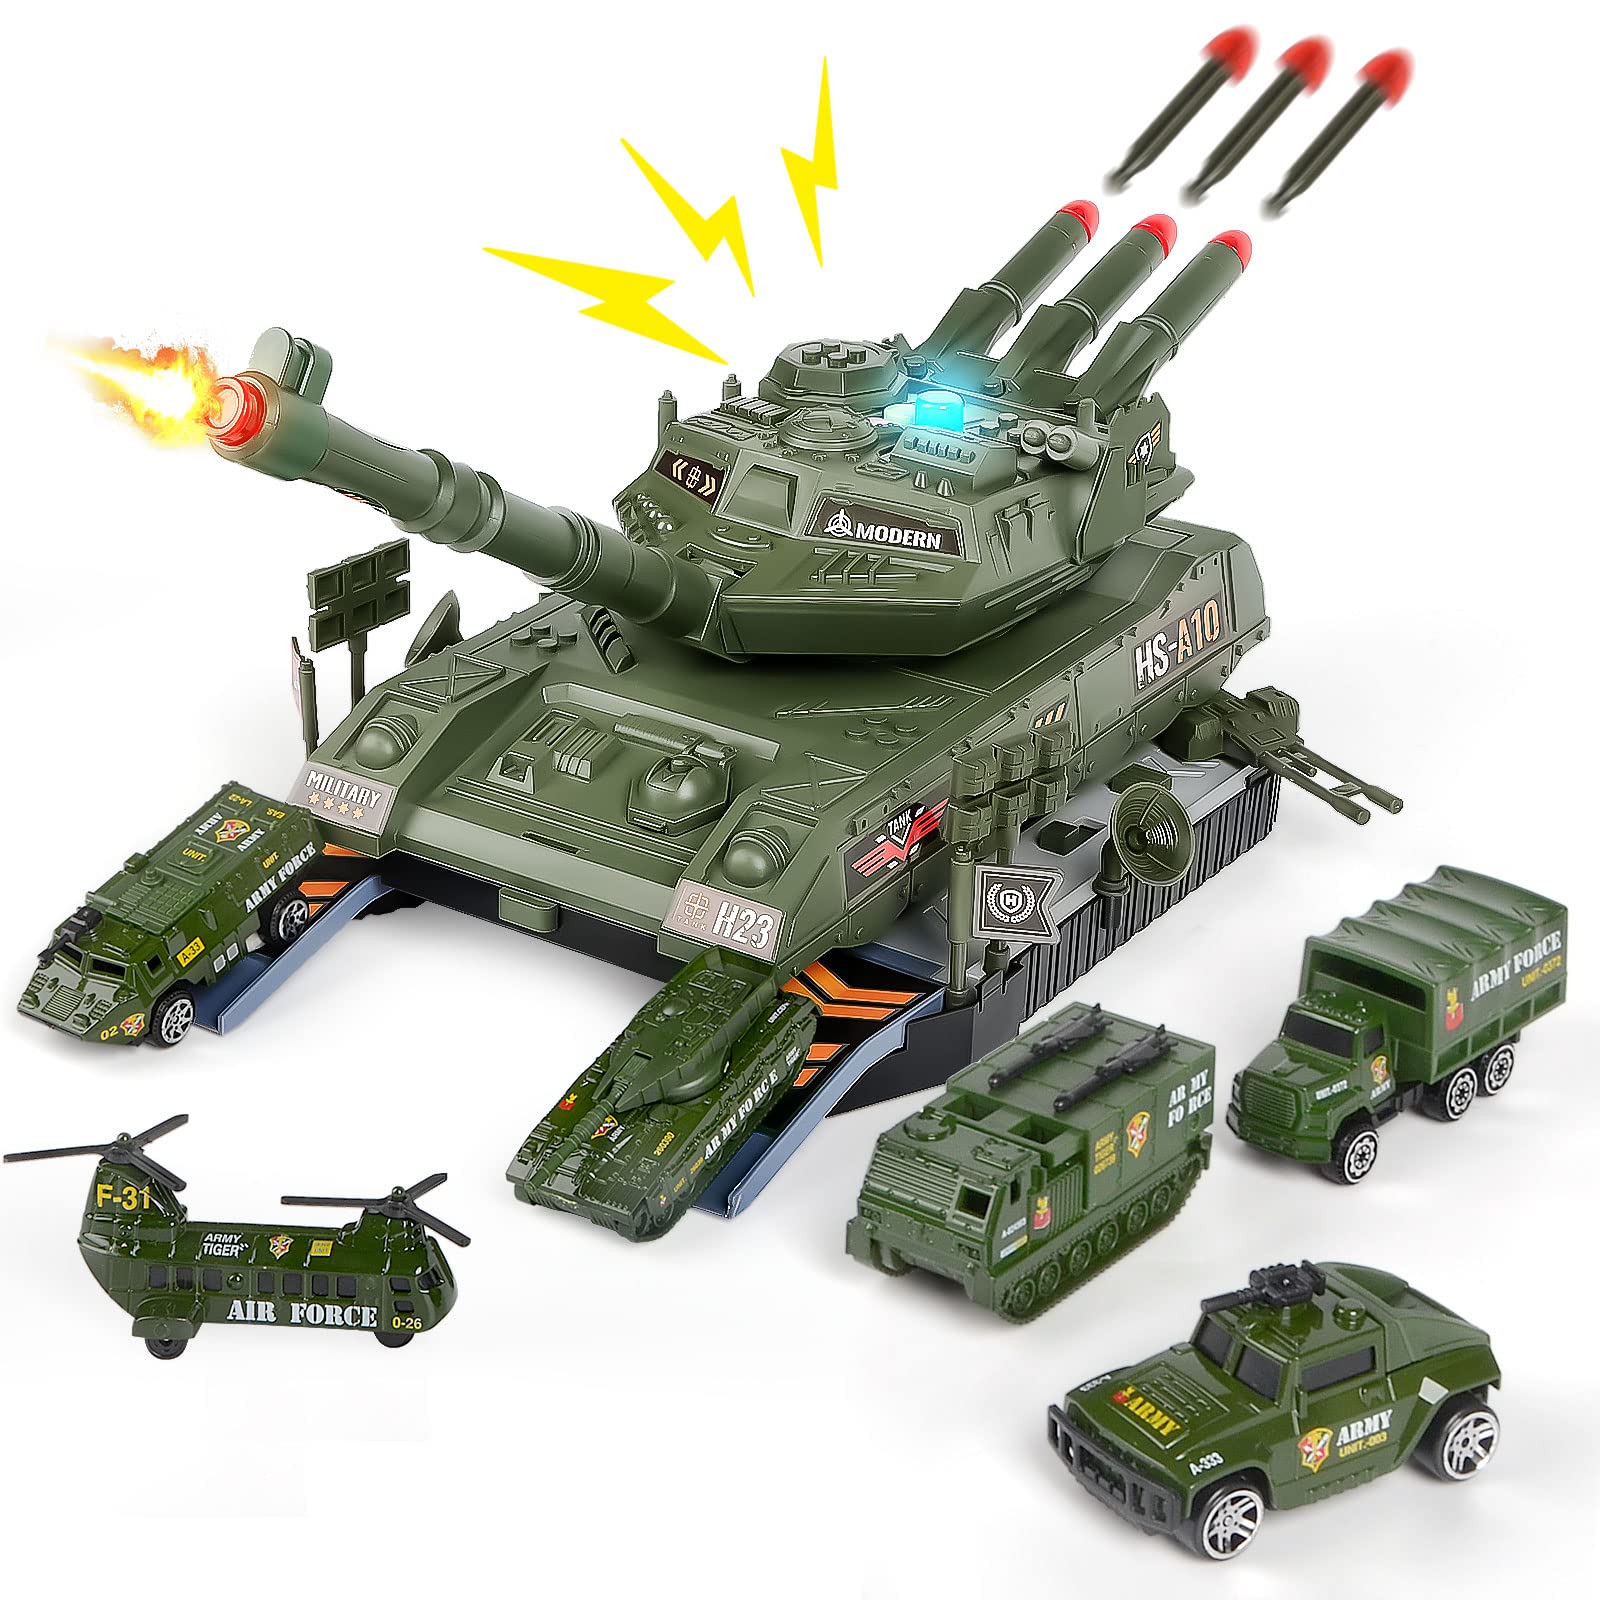 COVTOY Military Toy Tank Set